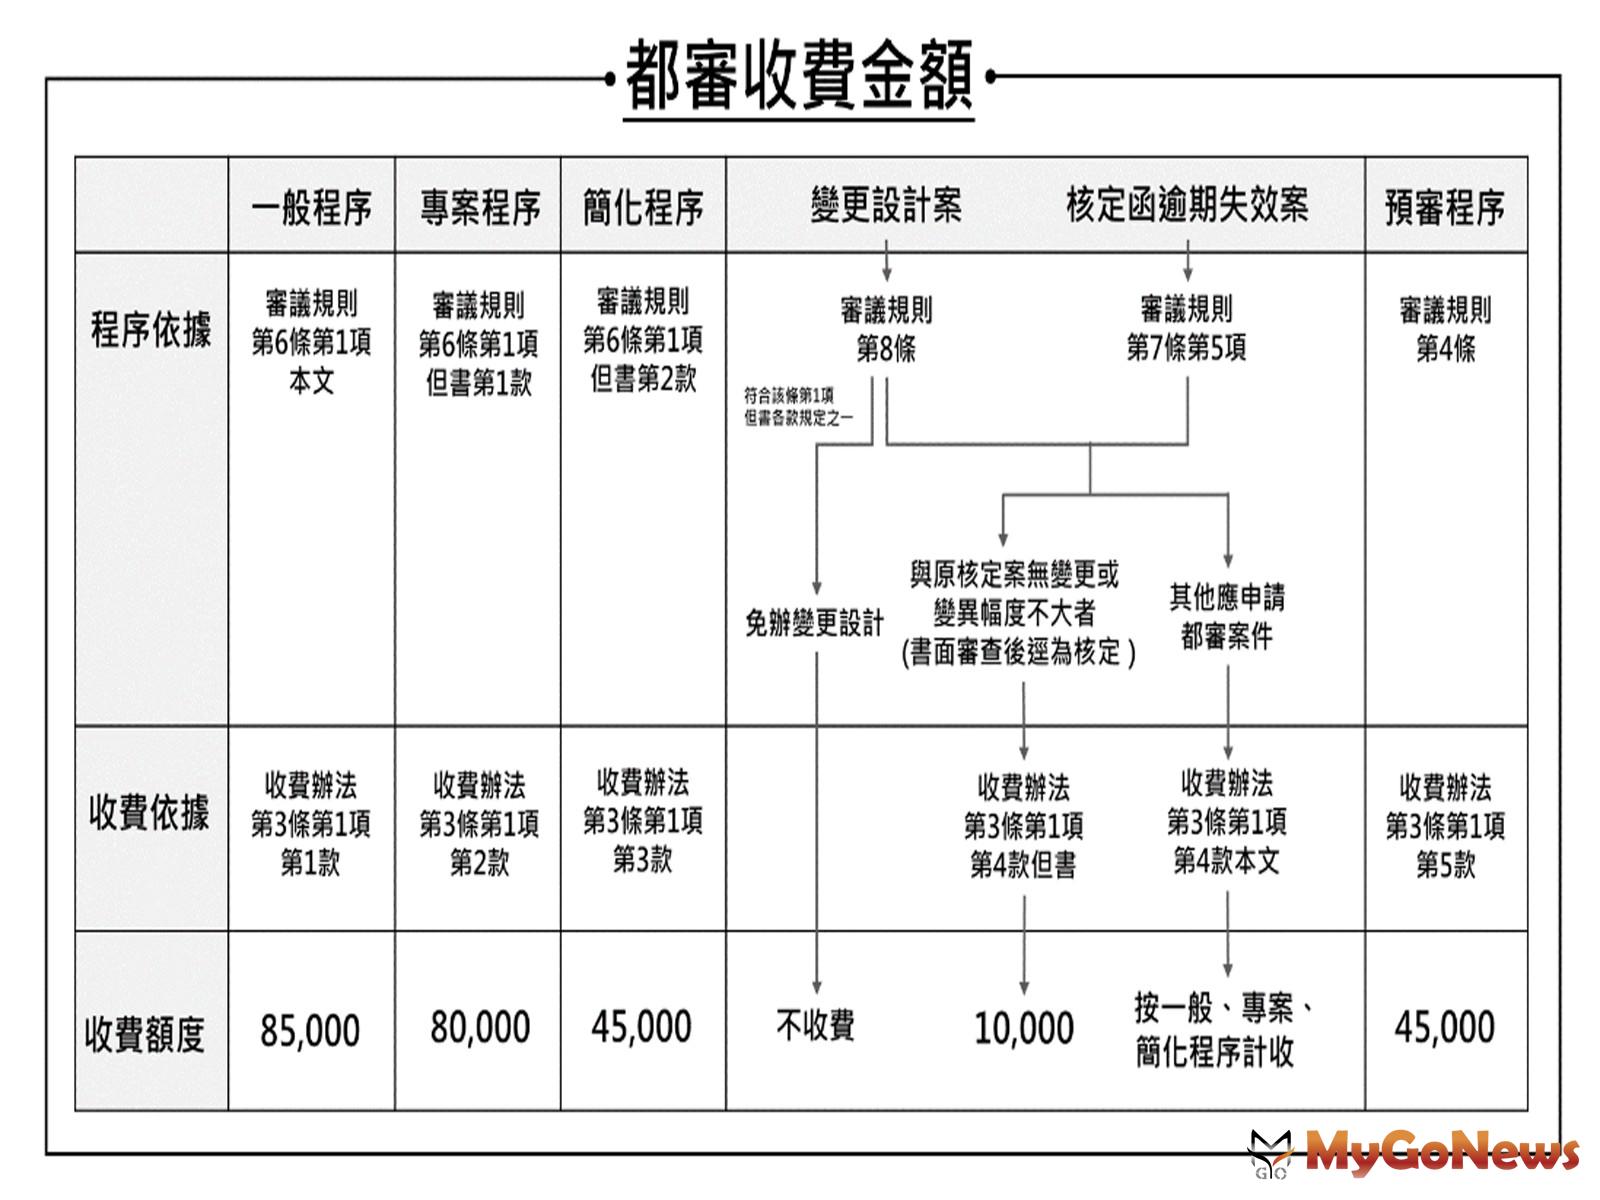 台北都審收費自7月1日正式實施